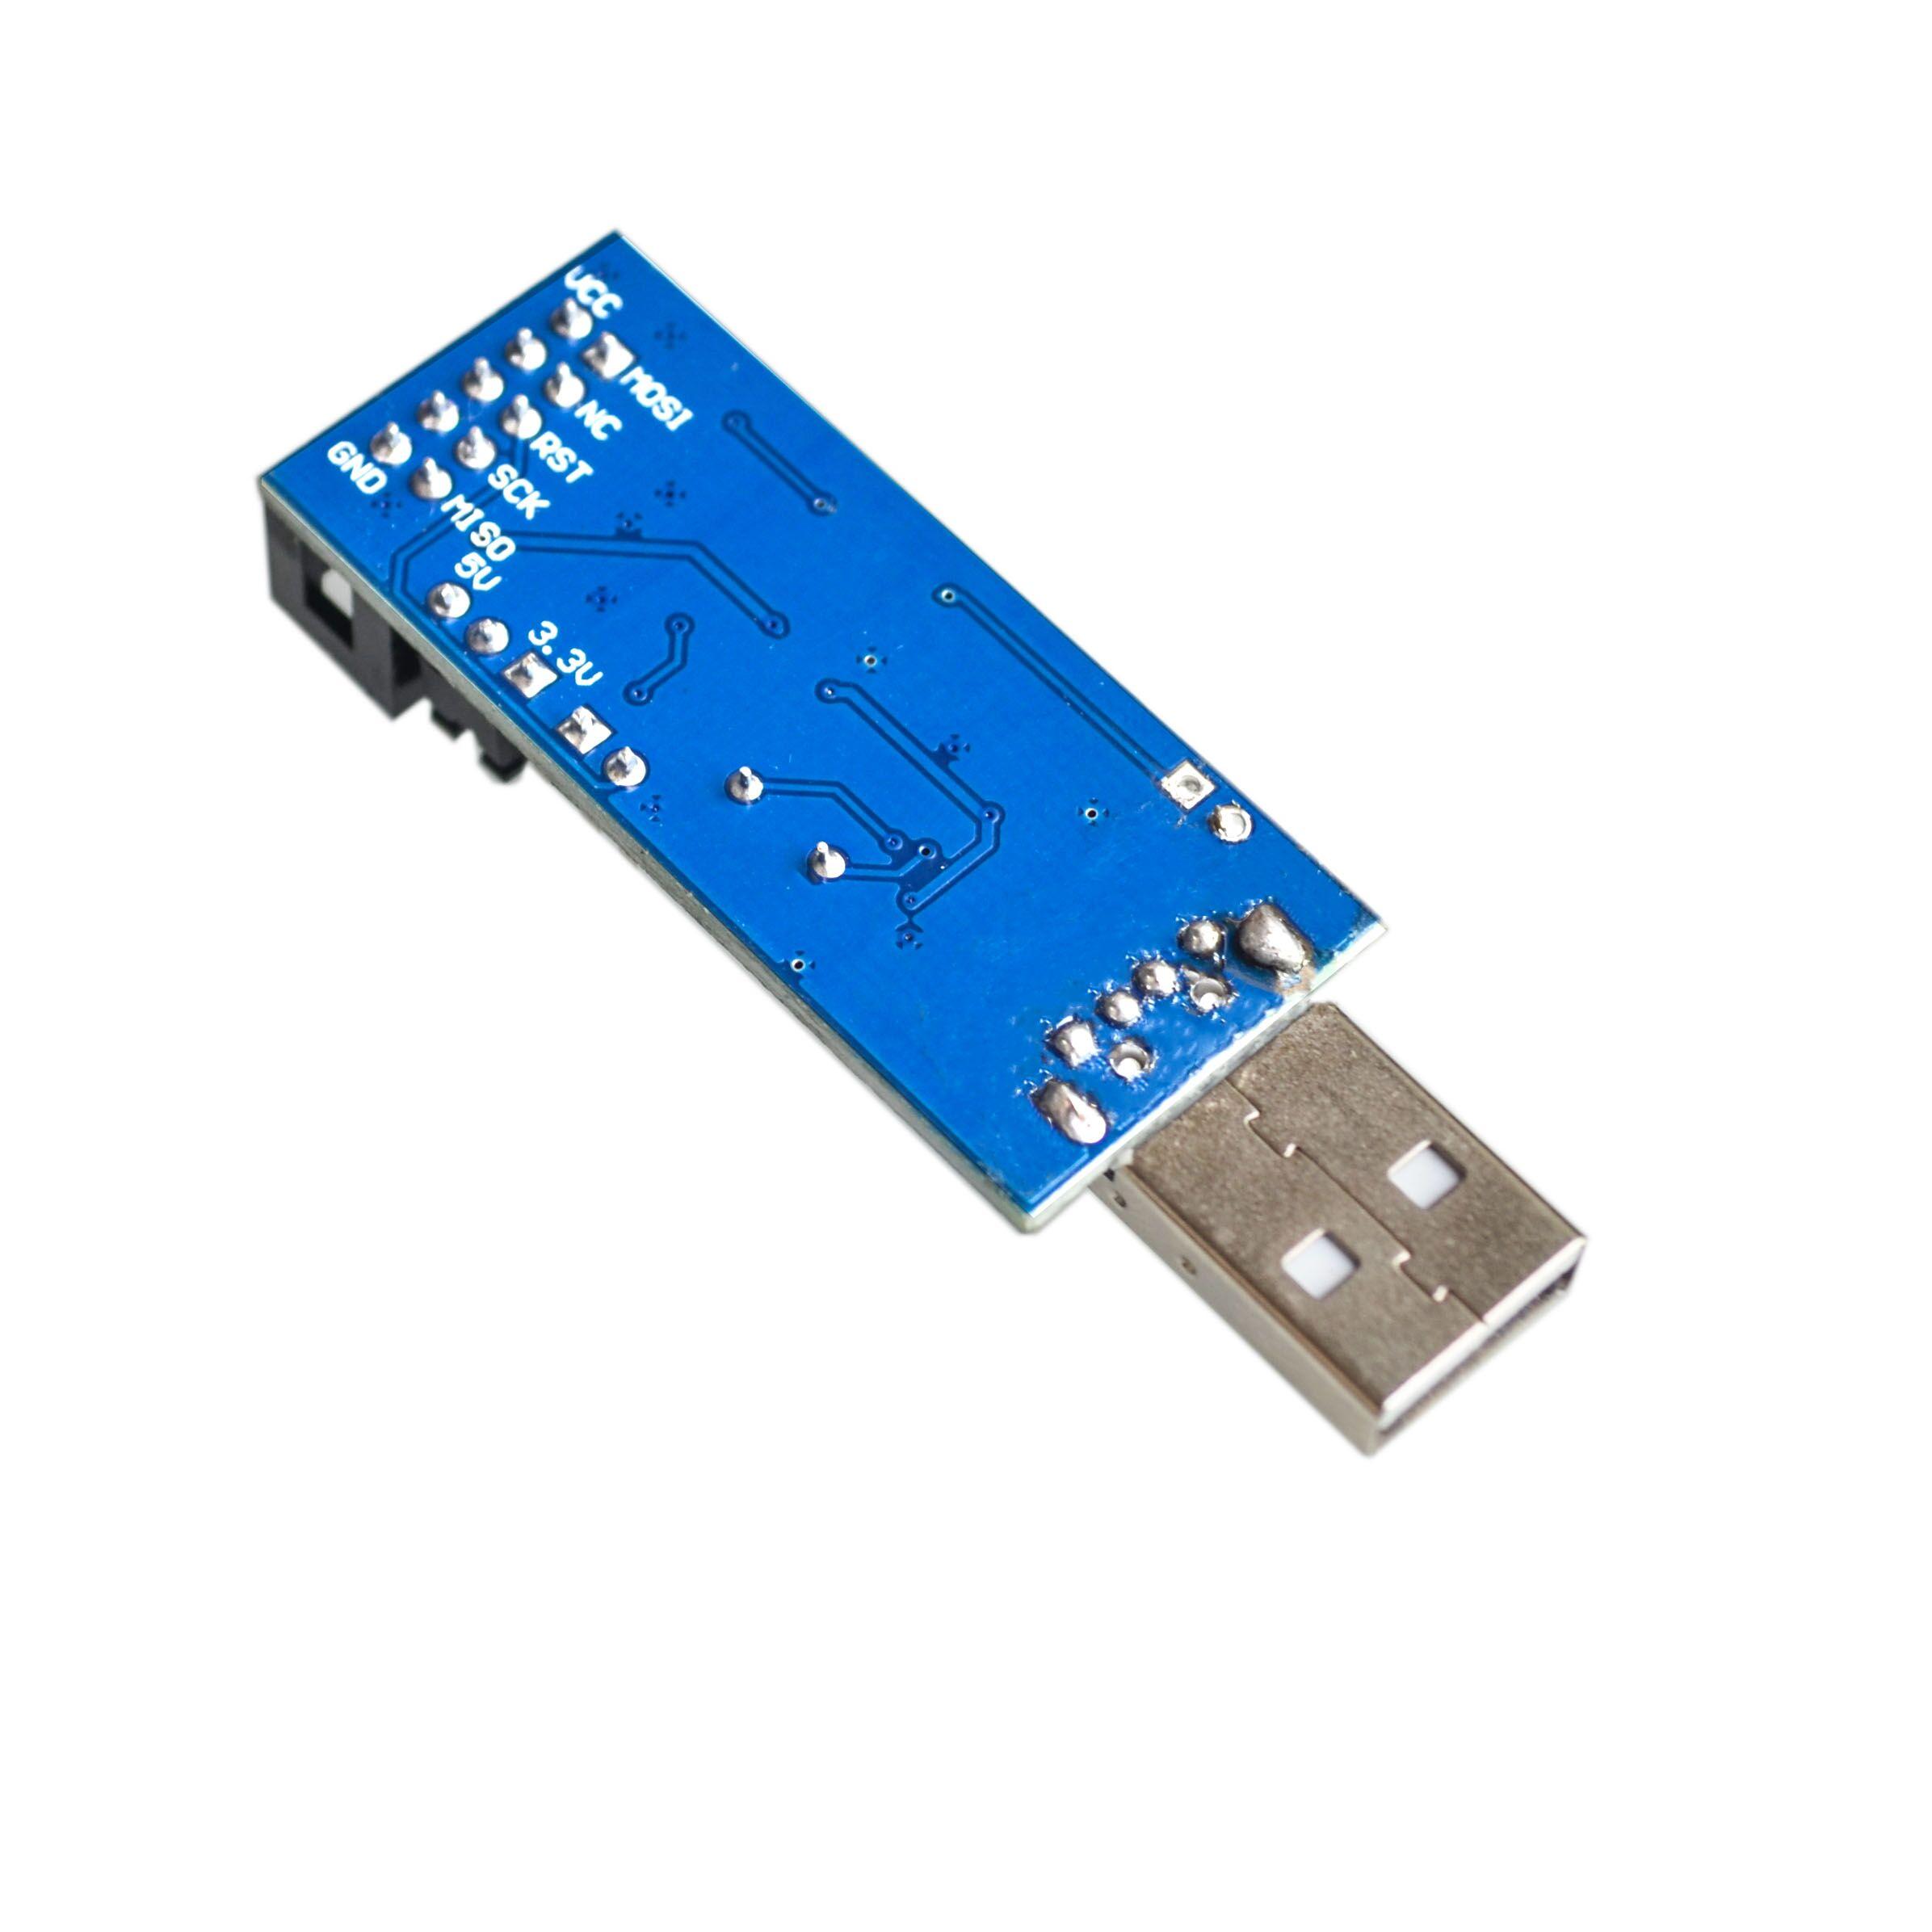 10LOT-New-USBASP-USBISP-AVR-Programmer-USB-ISP-USB-ASP-ATMEGA8-ATMEGA128-Support-Win7-64K